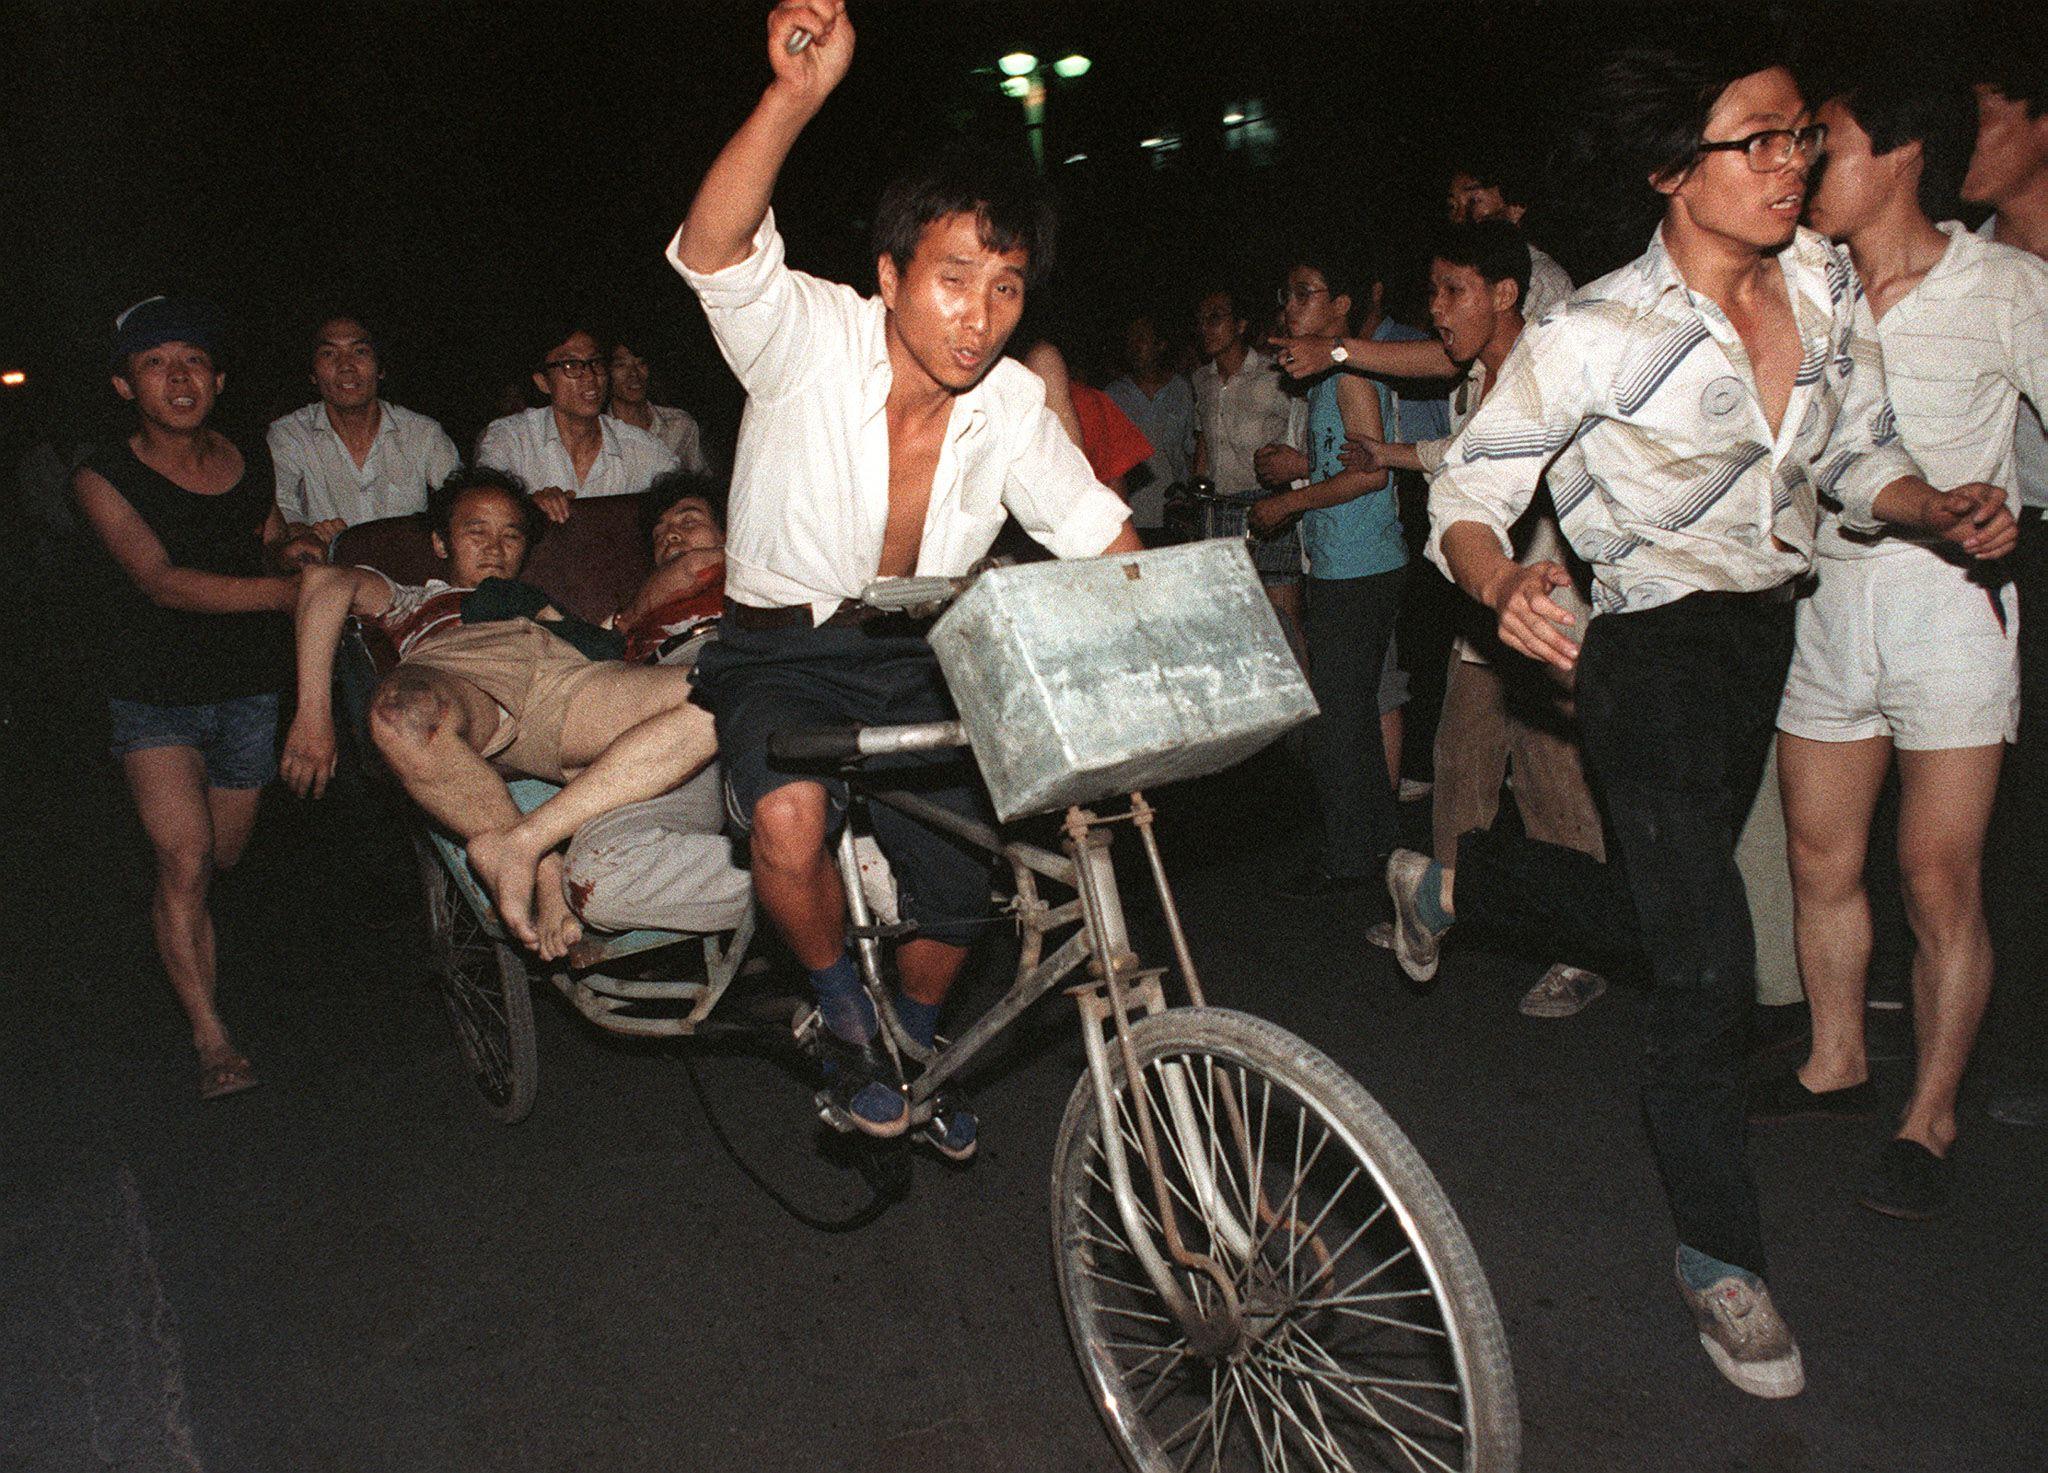 Skadade förs bort efter arméns attack mot demokratiprotesterna på Himmelska fridens torg den 4 juni 1989. Som alltid kring årsdagen hamnar den kinesiska regimens ihärdiga vägran att erkänna och ta i de här händelserna i fokus. (Foto: Manuel Ceneta/AFP/Getty Images)